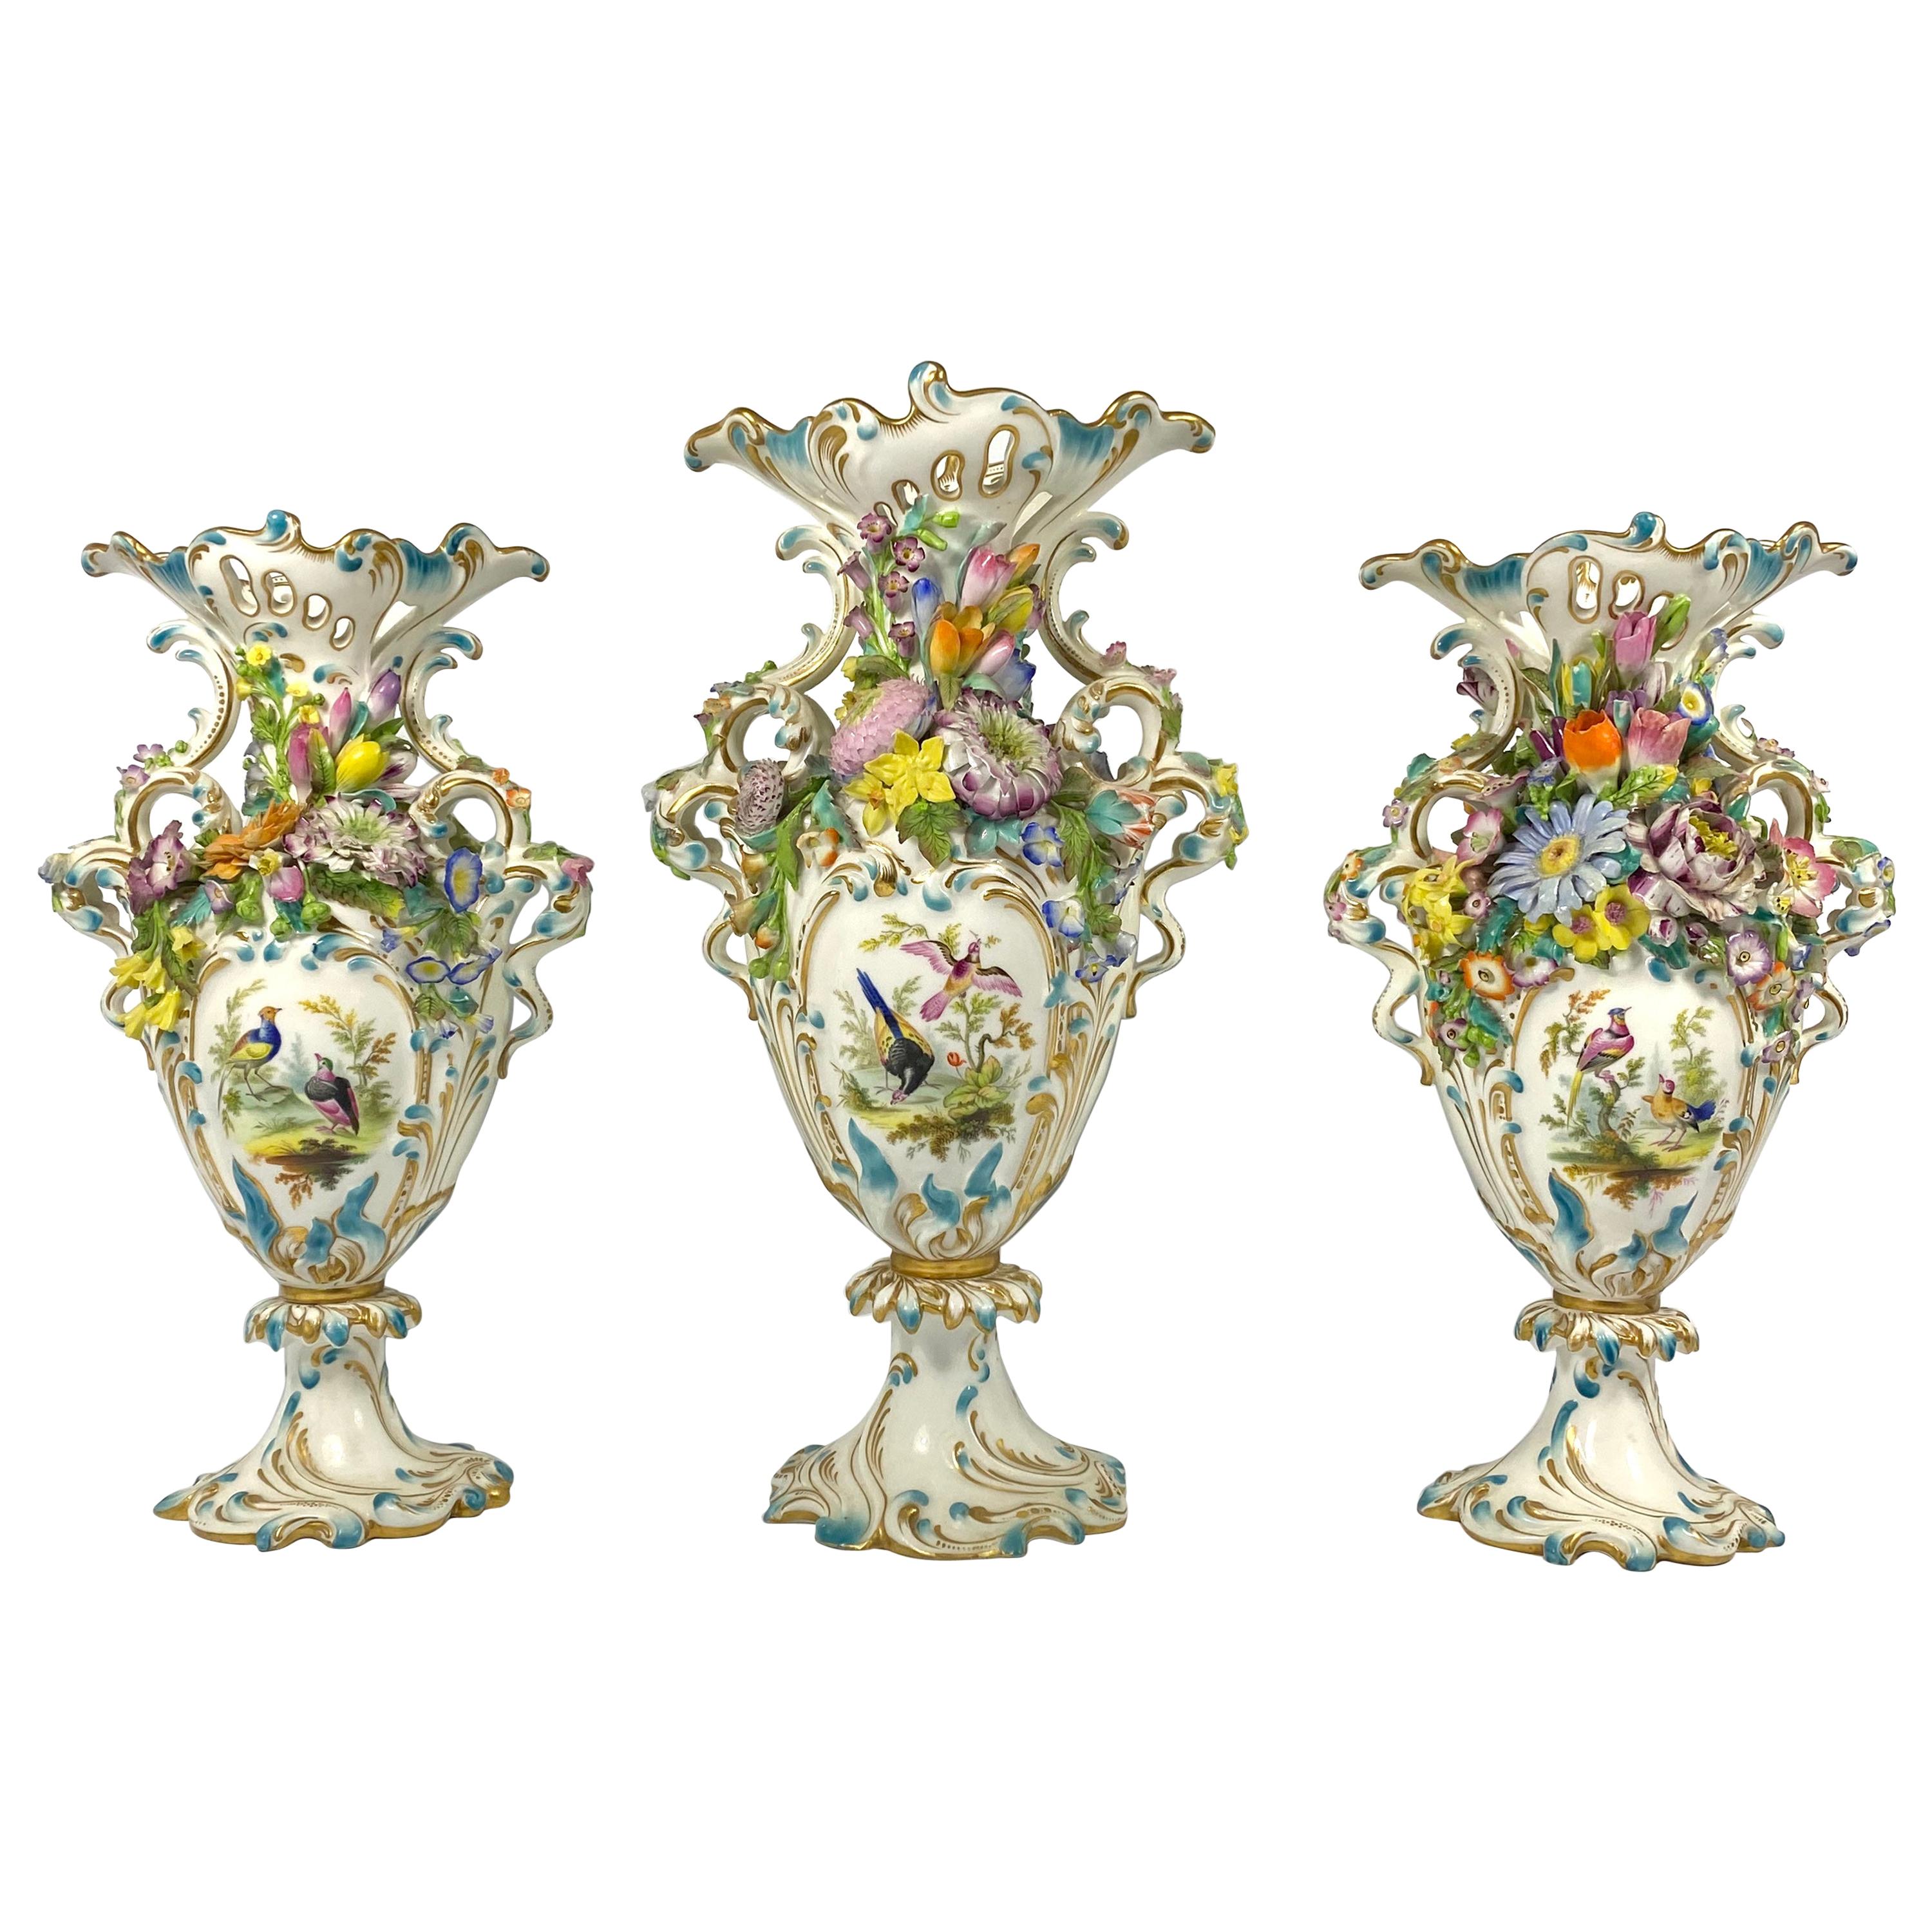 Feine Minton-Porzellan-Garnitur "Blumen mit Kruste", um 1830